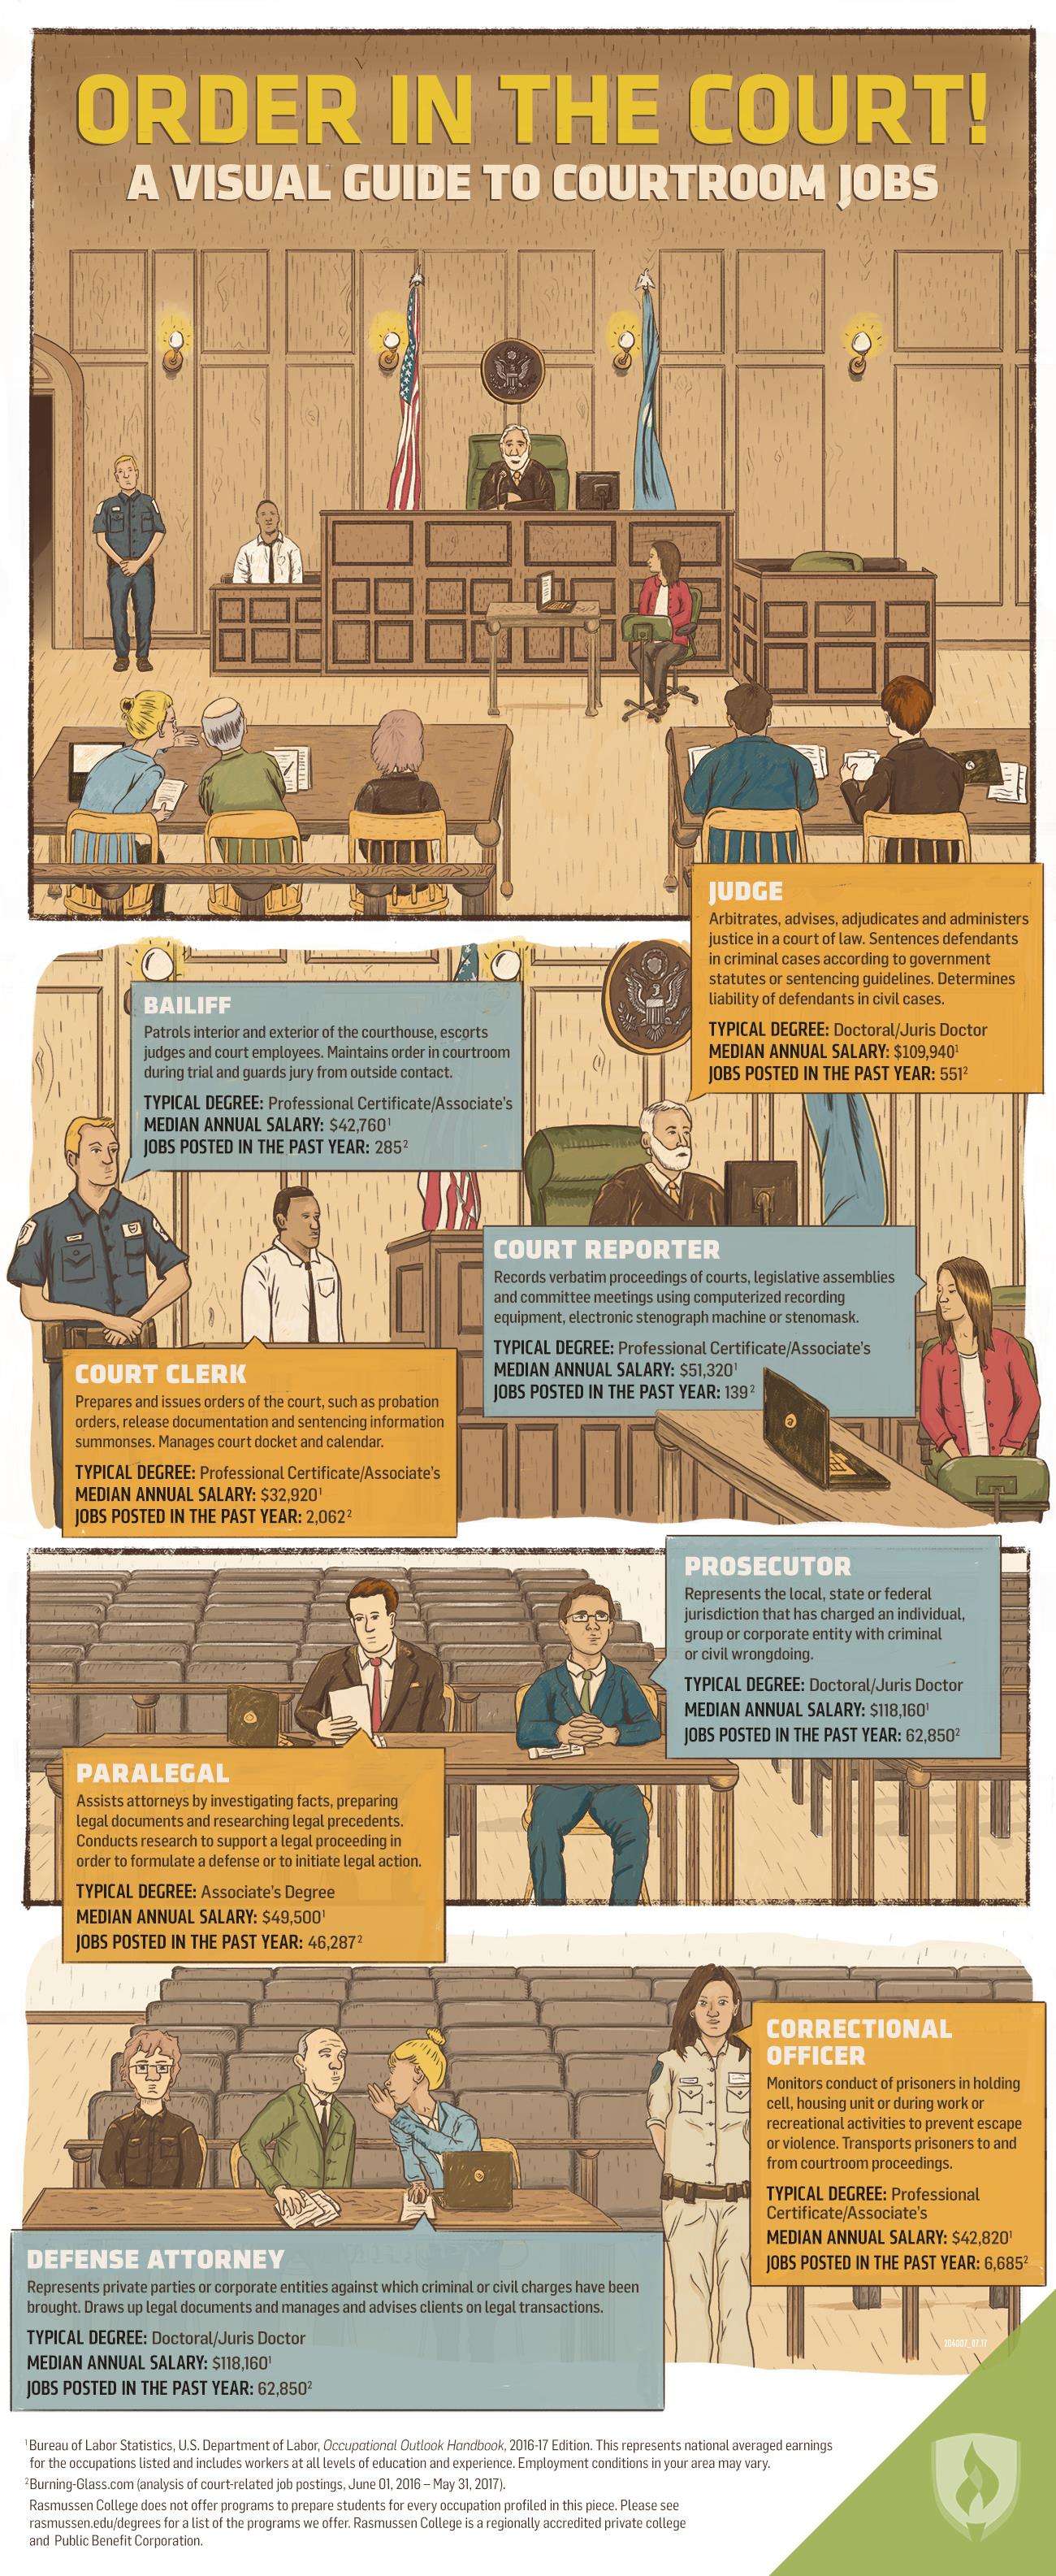 Courtroom Jobs Infographic, described in detail below.